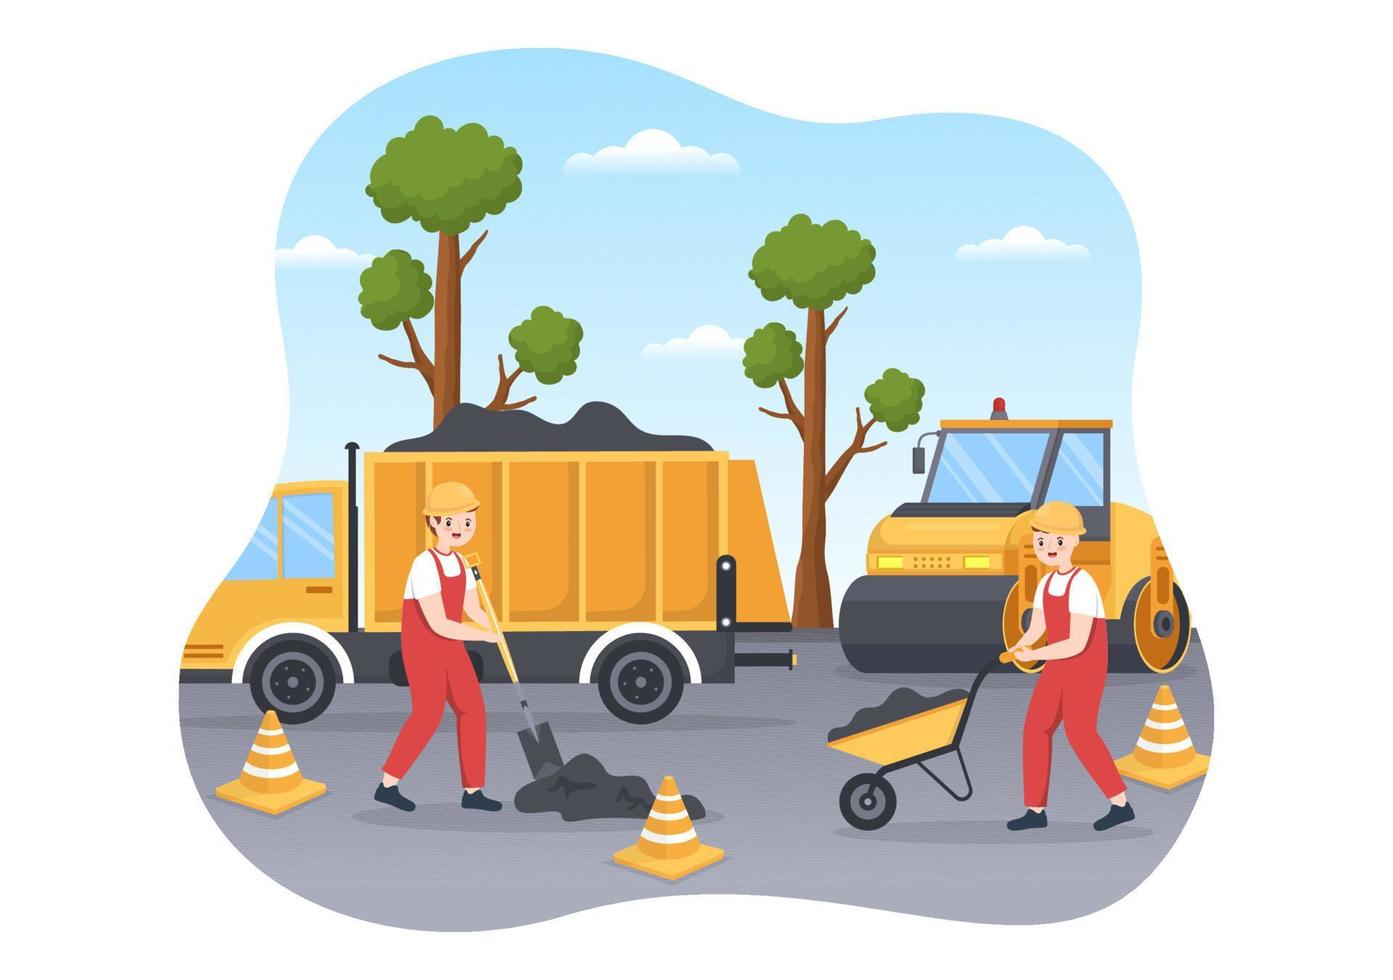 trabajadores de construcción de carreteras y mantenimiento de carreteras que trabajan en carreteras asfaltadas con máquina perforadora en ilustración de plantilla de dibujo a mano de caricatura plana vector